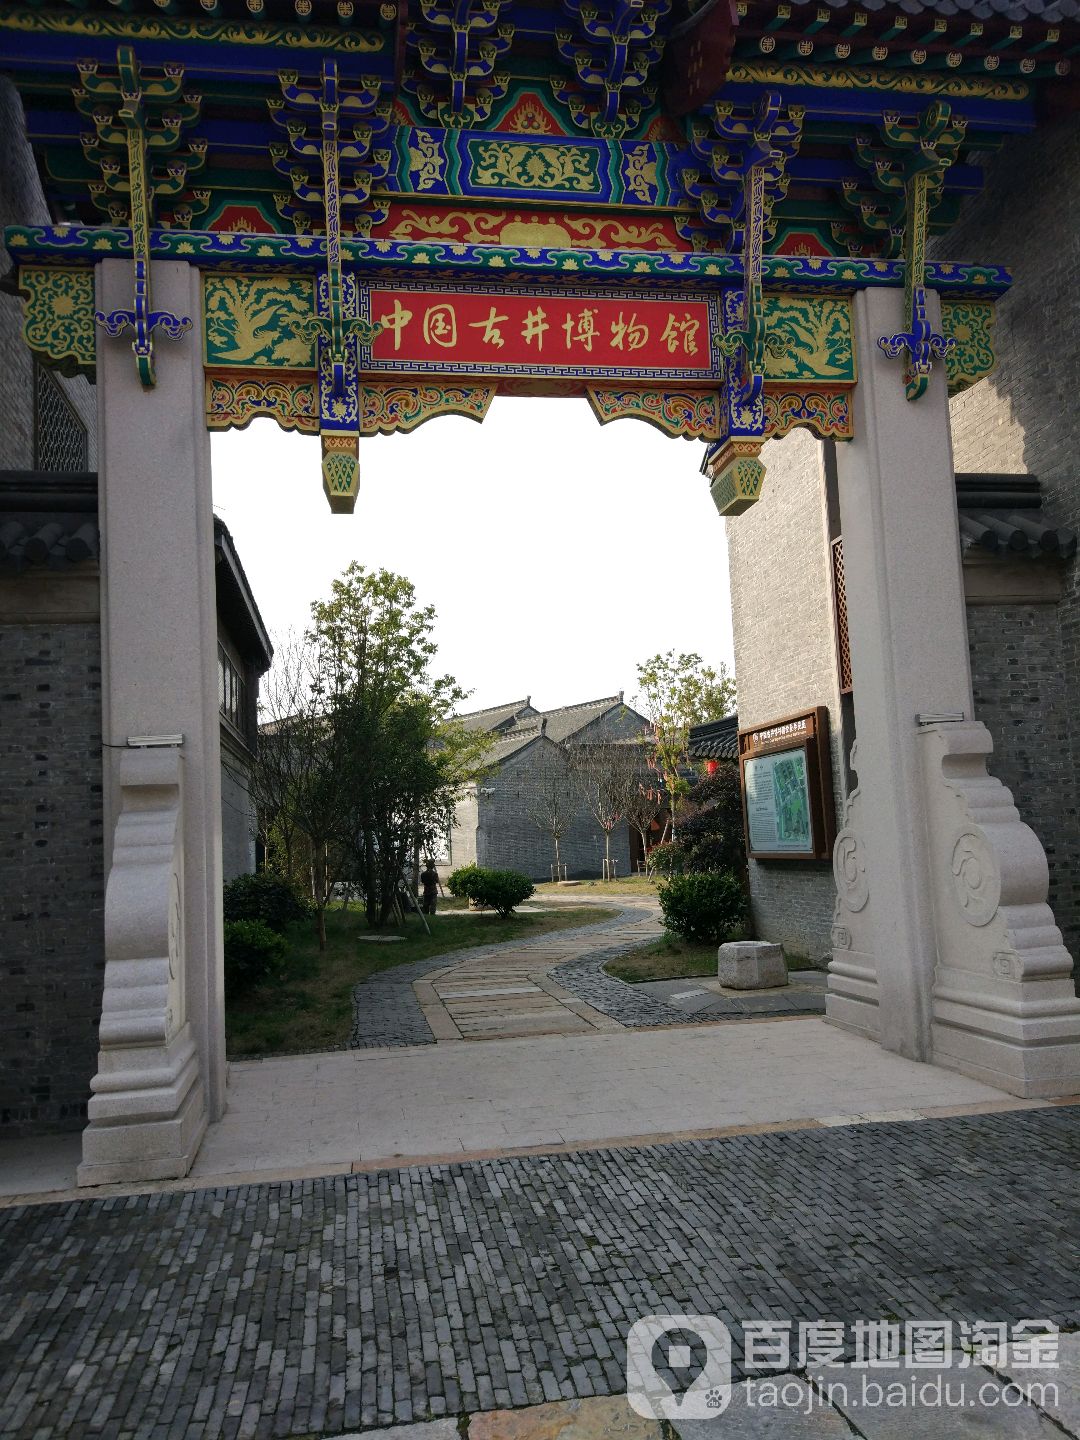 中国古井博博物馆